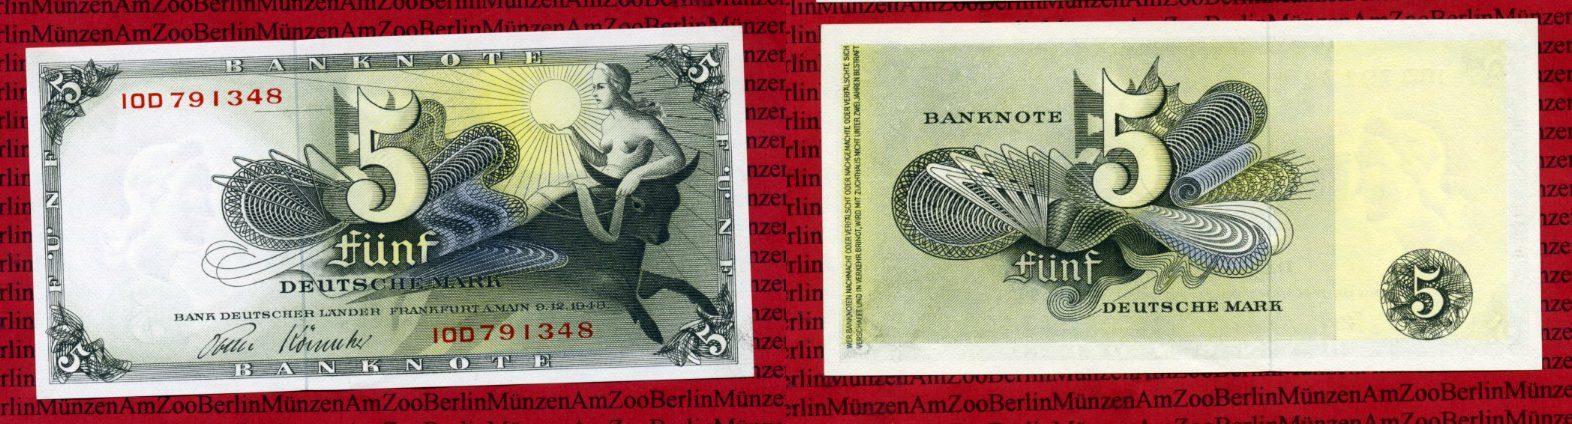 Foto Brd, Bank Deutscher Länder 5 Dm Deutsche Mark Europa Entführung 1948,